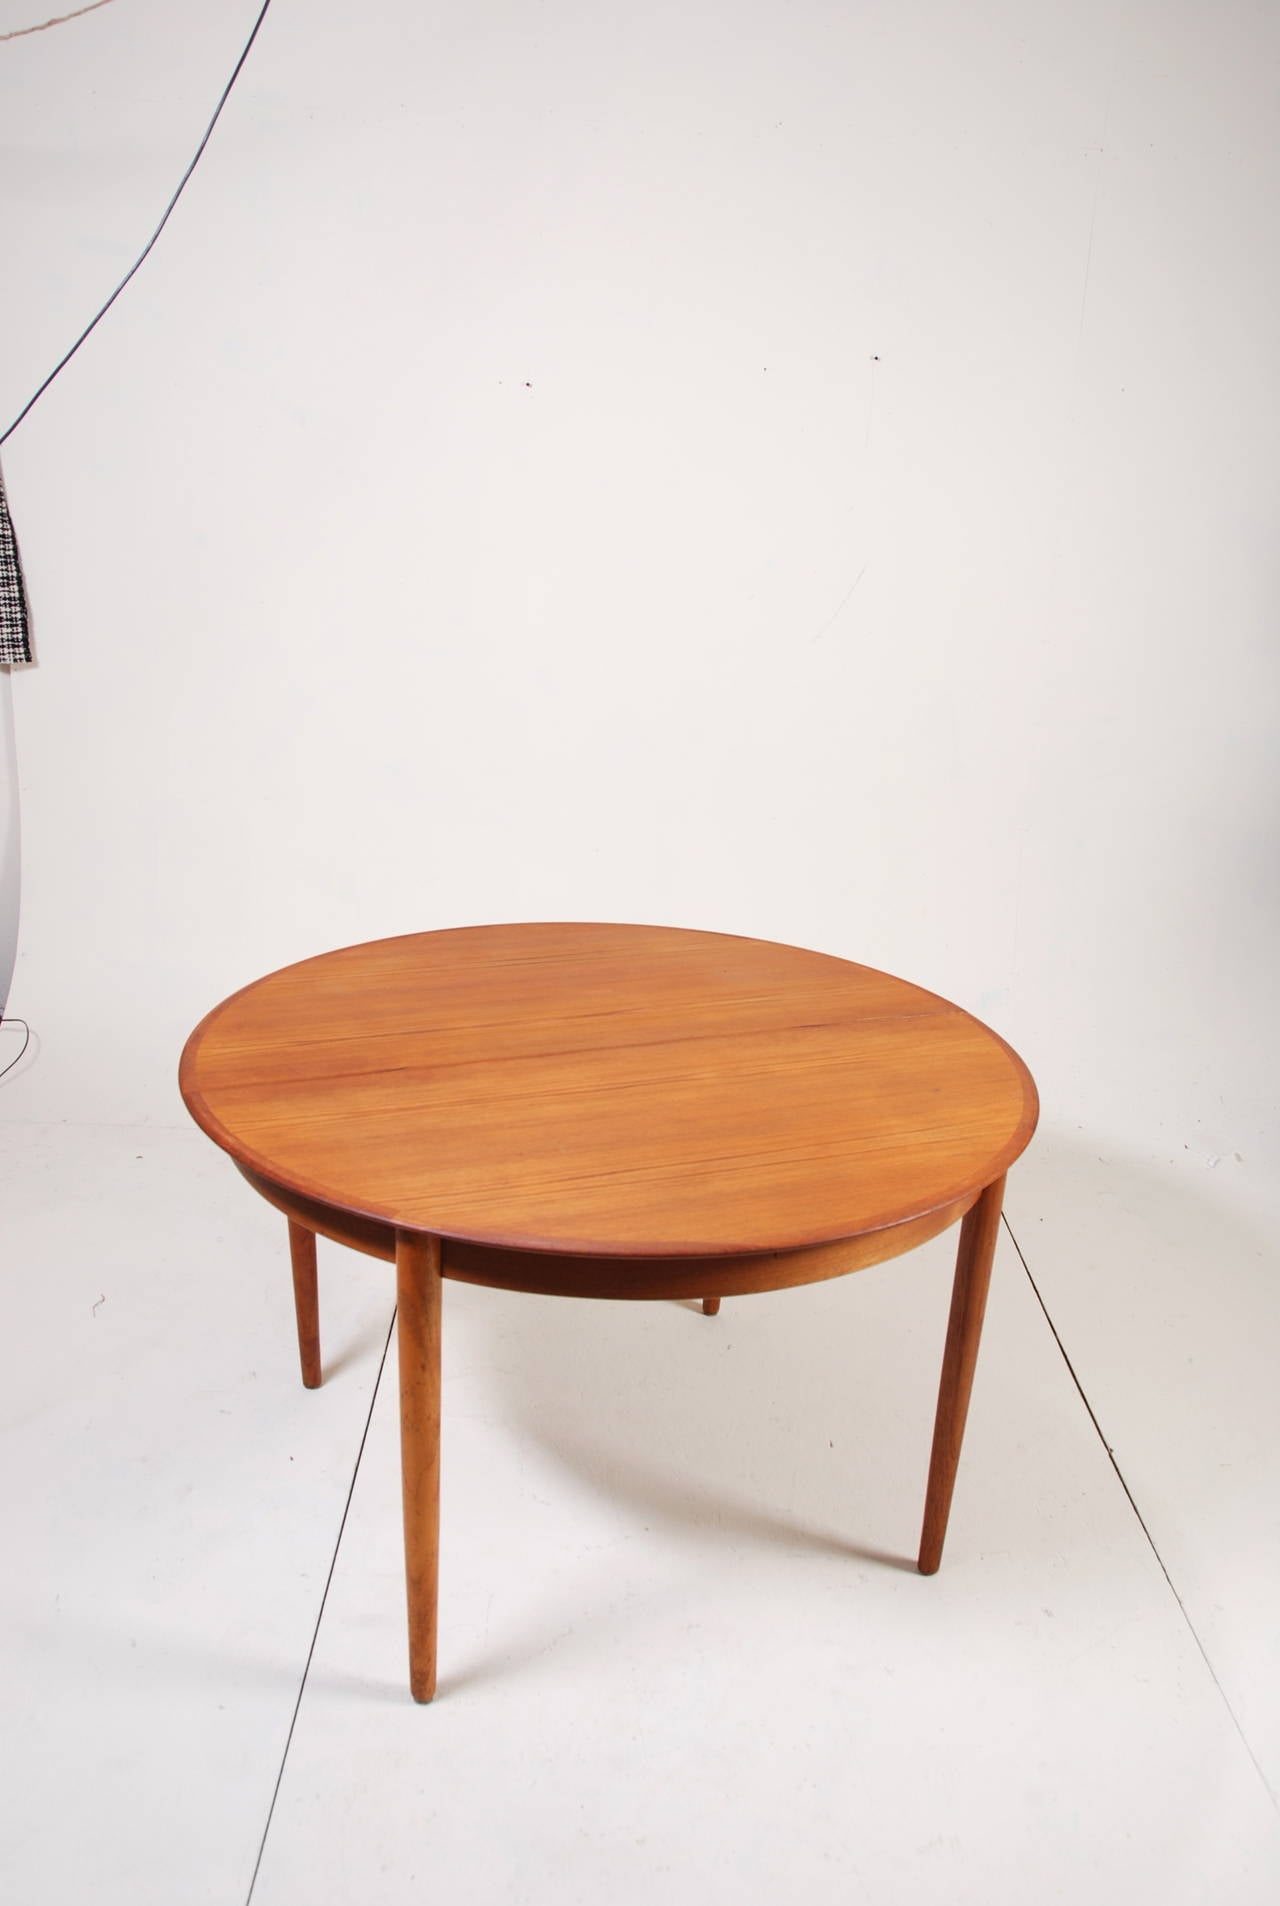 Round Danish Modern Teak Dining Table by Dyrlund 1